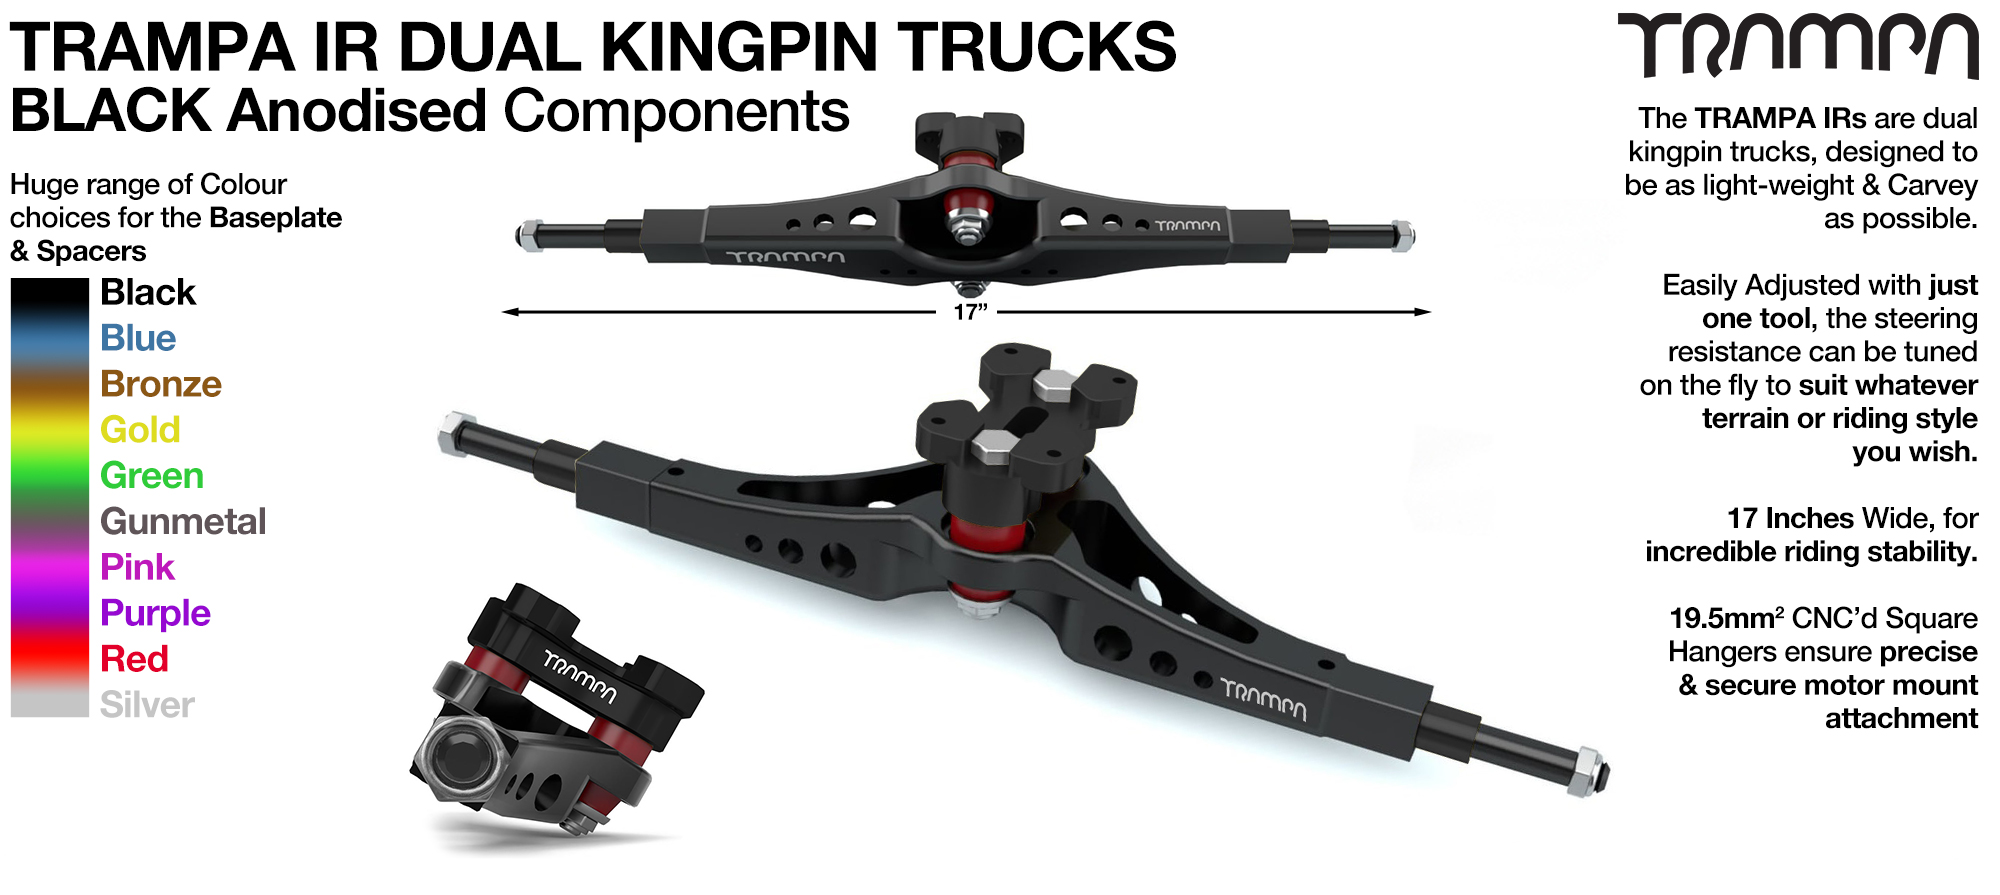 TRAMPA IR Double Kingpinned Skate Style Trucks fit every 19.1mm Motor Mount TRAMPA offers - BLACK 